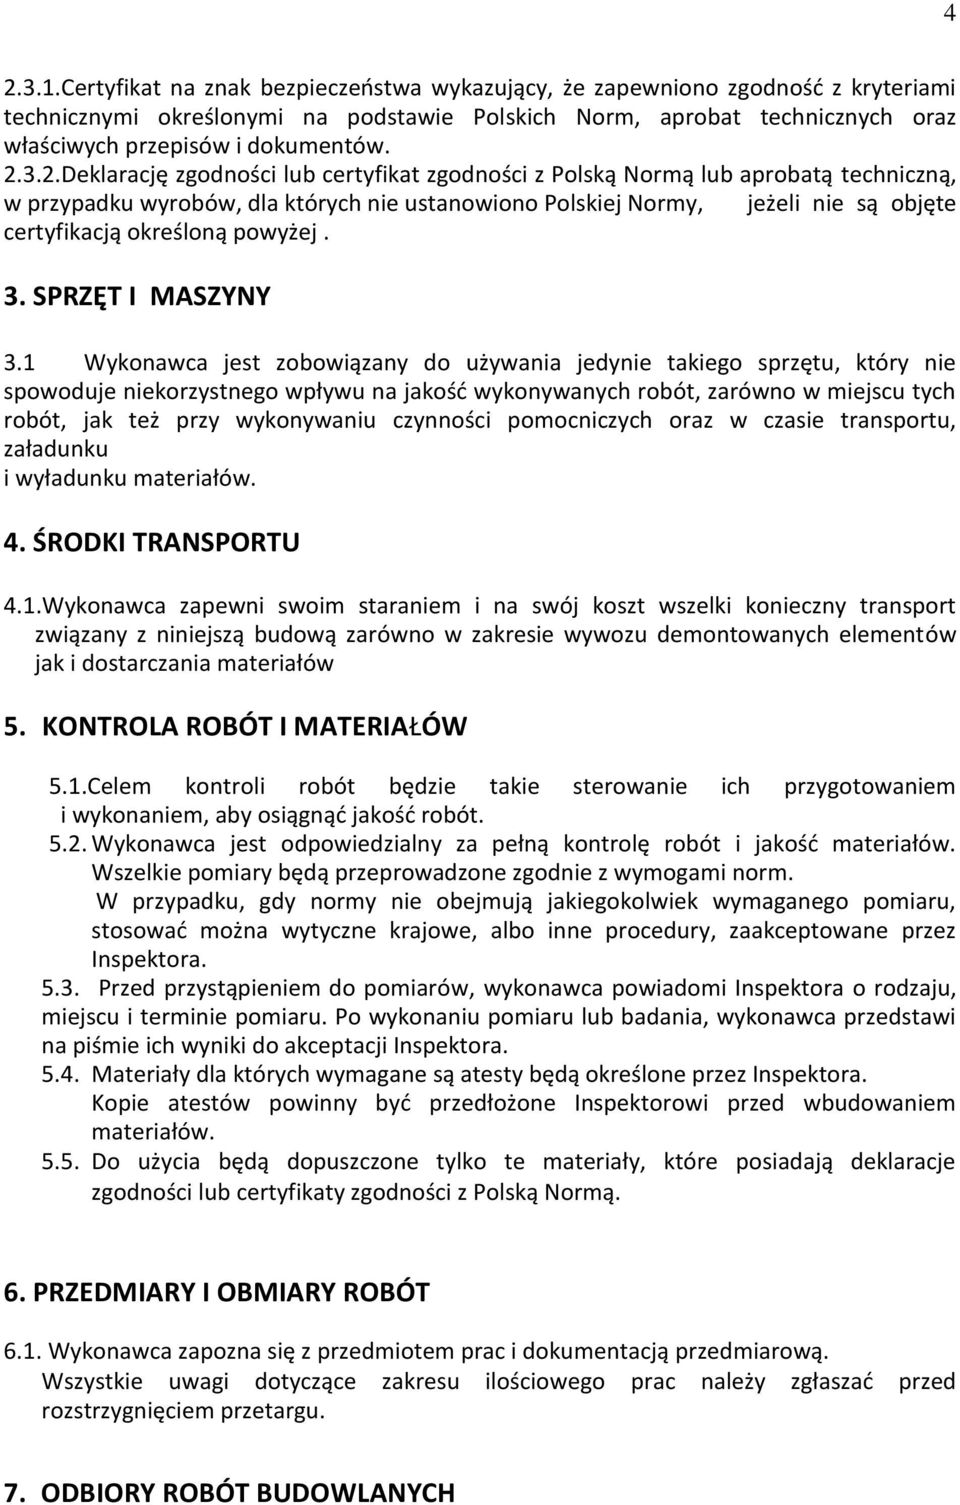 2.Deklarację zgodności lub certyfikat zgodności z Polską Normą lub aprobatą techniczną, w przypadku wyrobów, dla których nie ustanowiono Polskiej Normy, jeżeli nie są objęte certyfikacją określoną